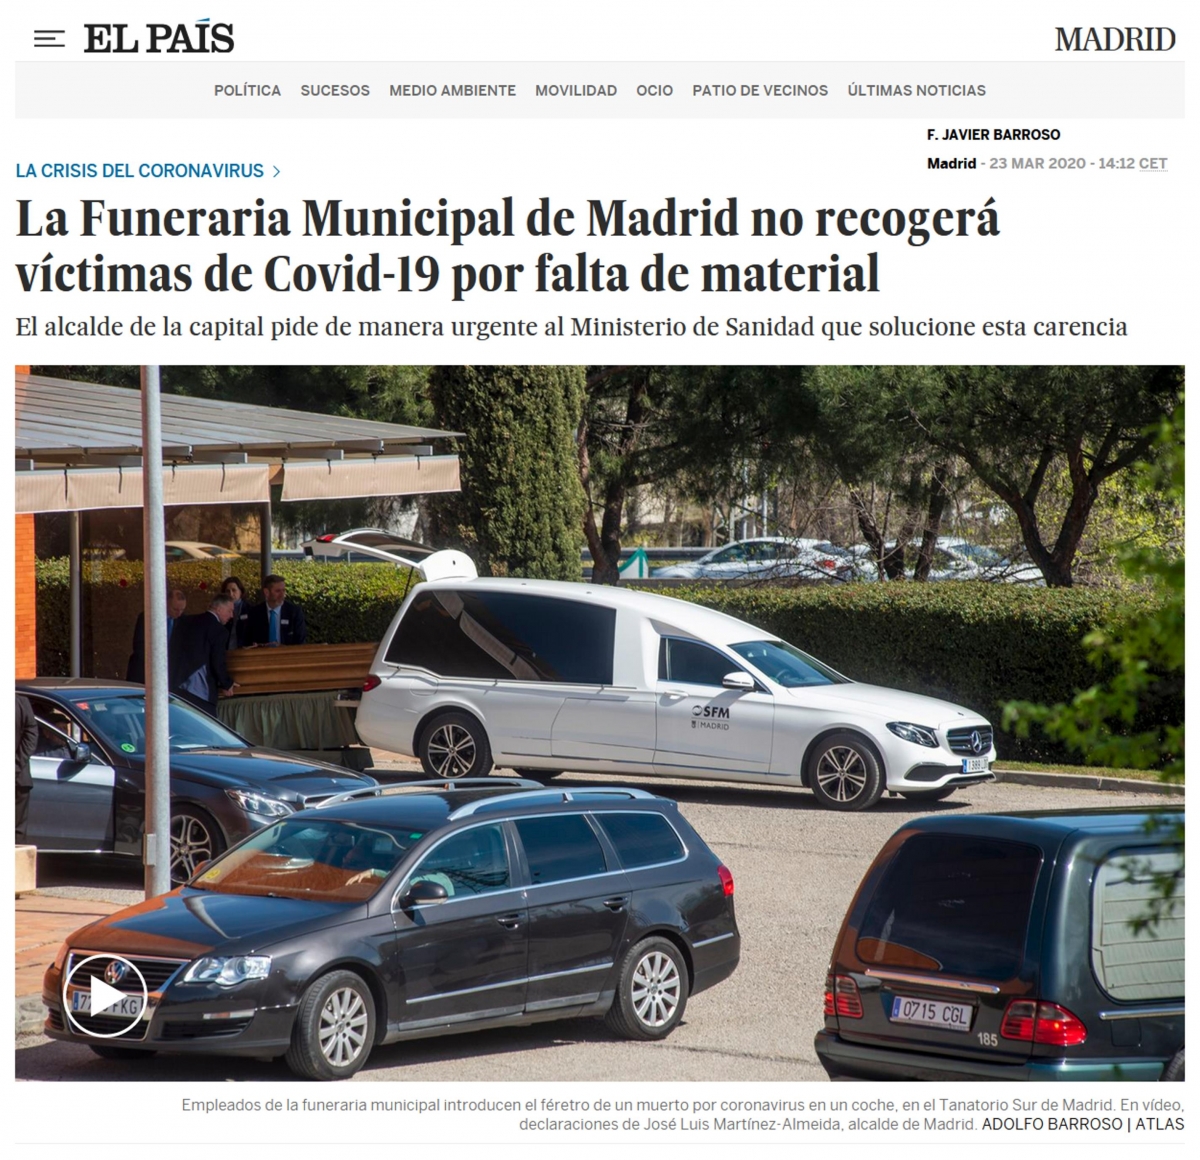 Pgina web de El Pas. La Funerara Municipal de Madrid no recoger vctimas de Covid-19 por falta de material. (CORONAVIRUS 23-03-2020)